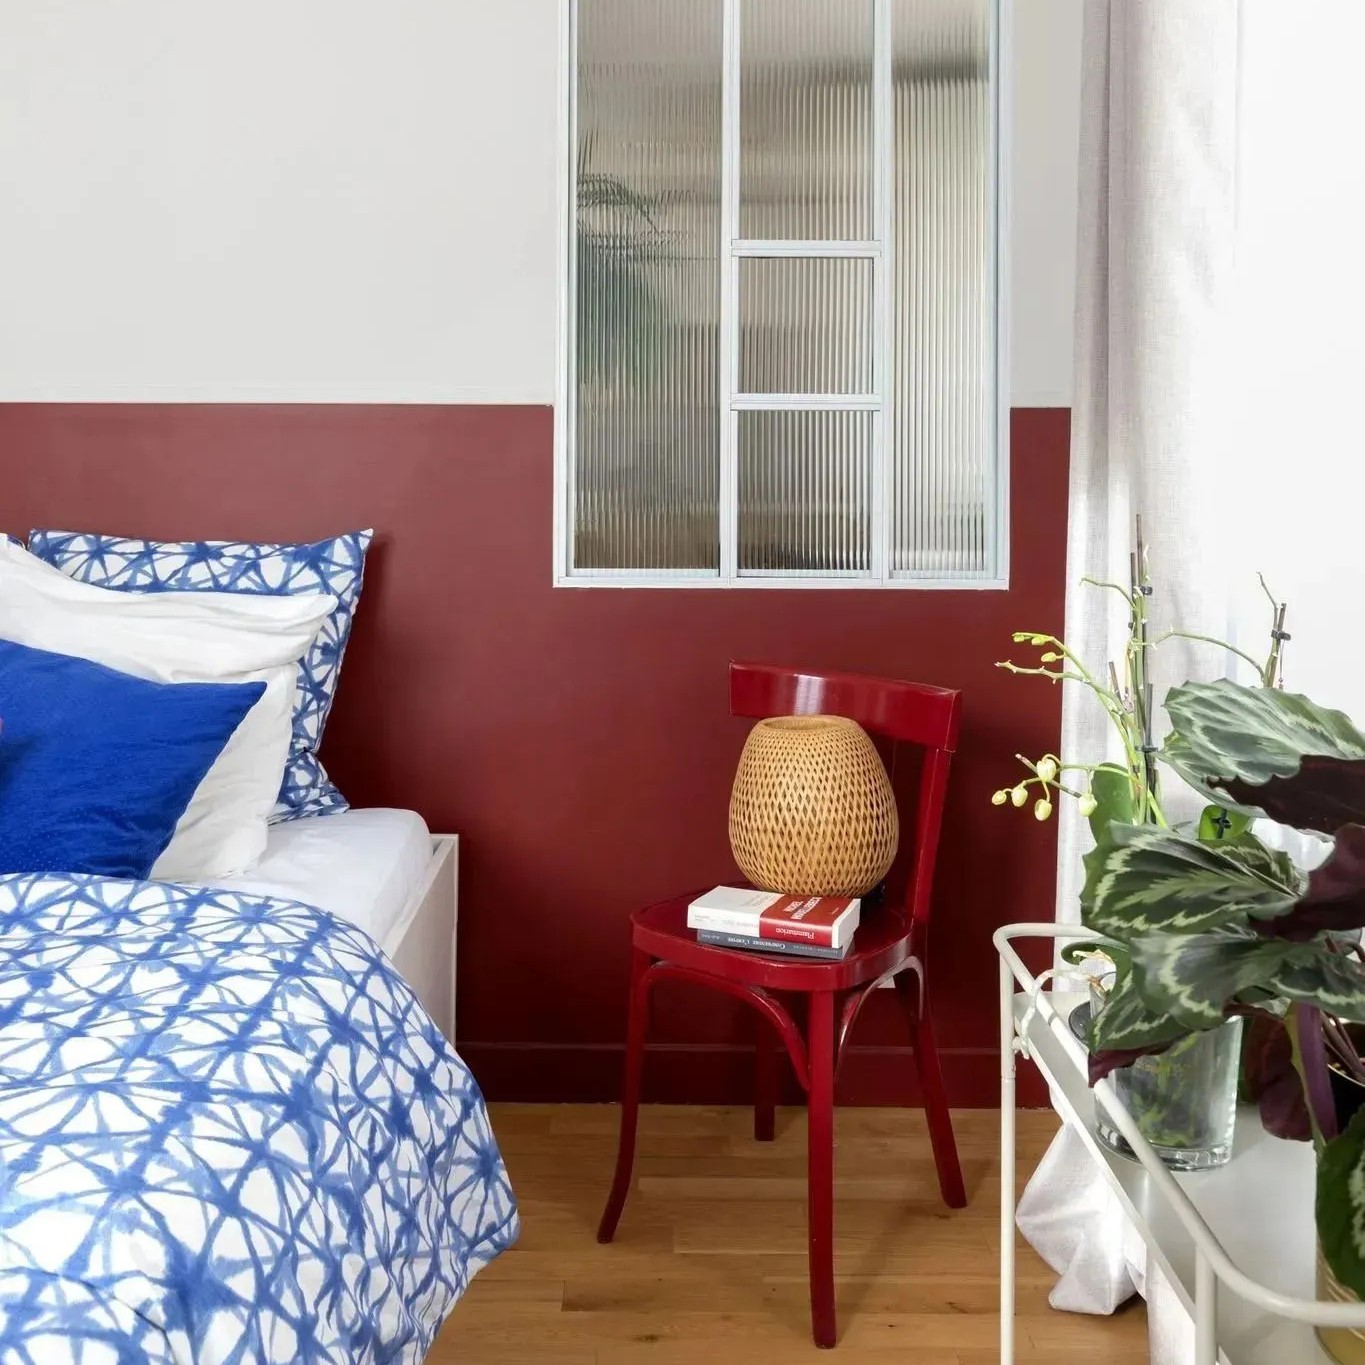 Peinture rouge en soubassement en grège en partie haute de la tête de lit, verrière blanche